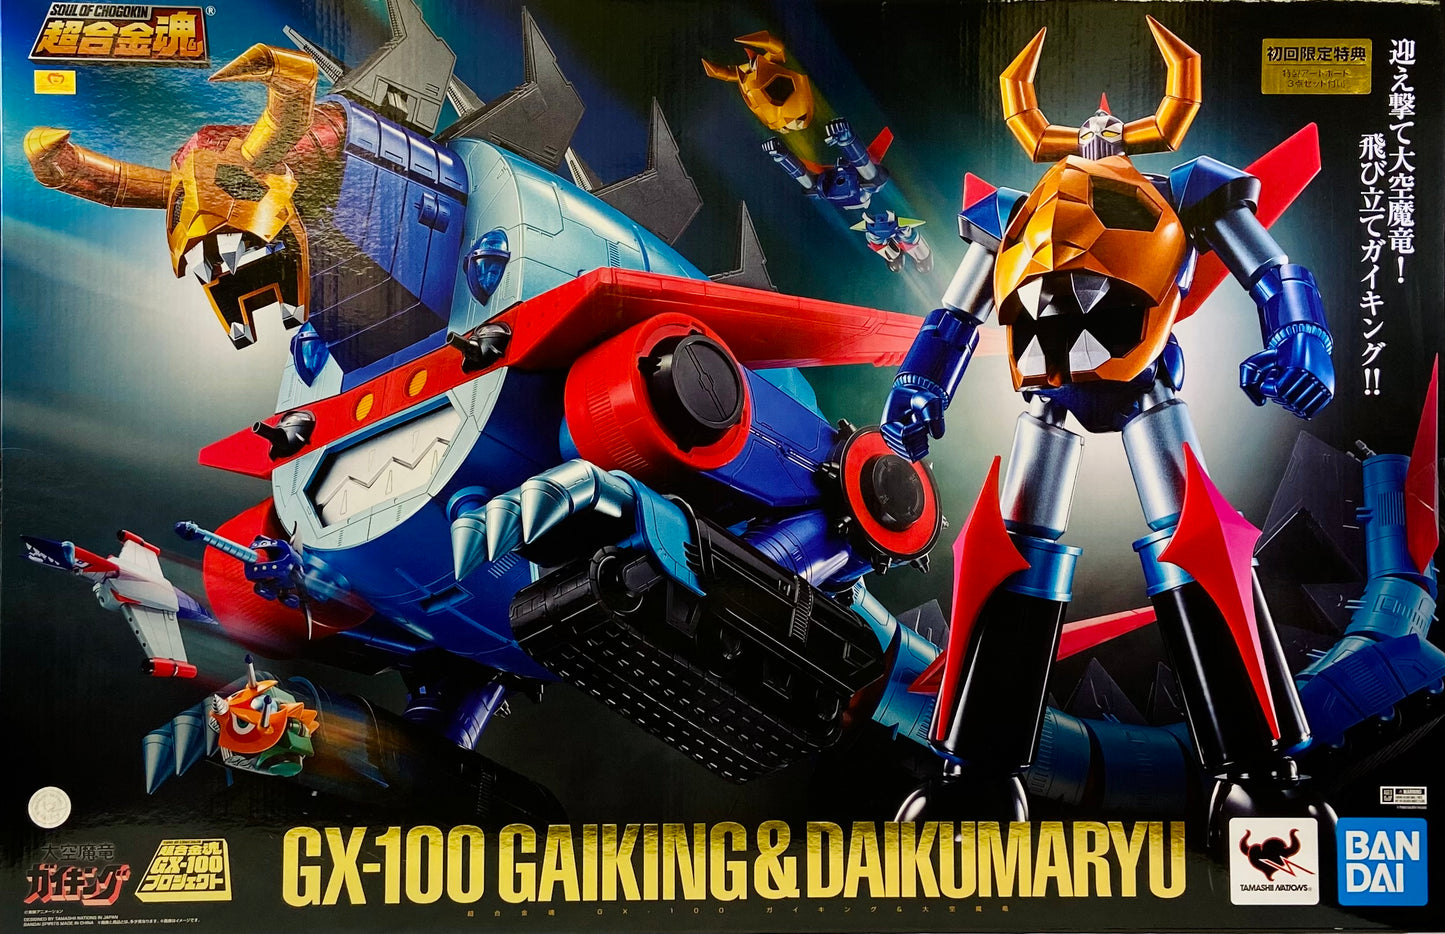 Soul of Chogokin GX-100 - Gaiking & Daikumaryu